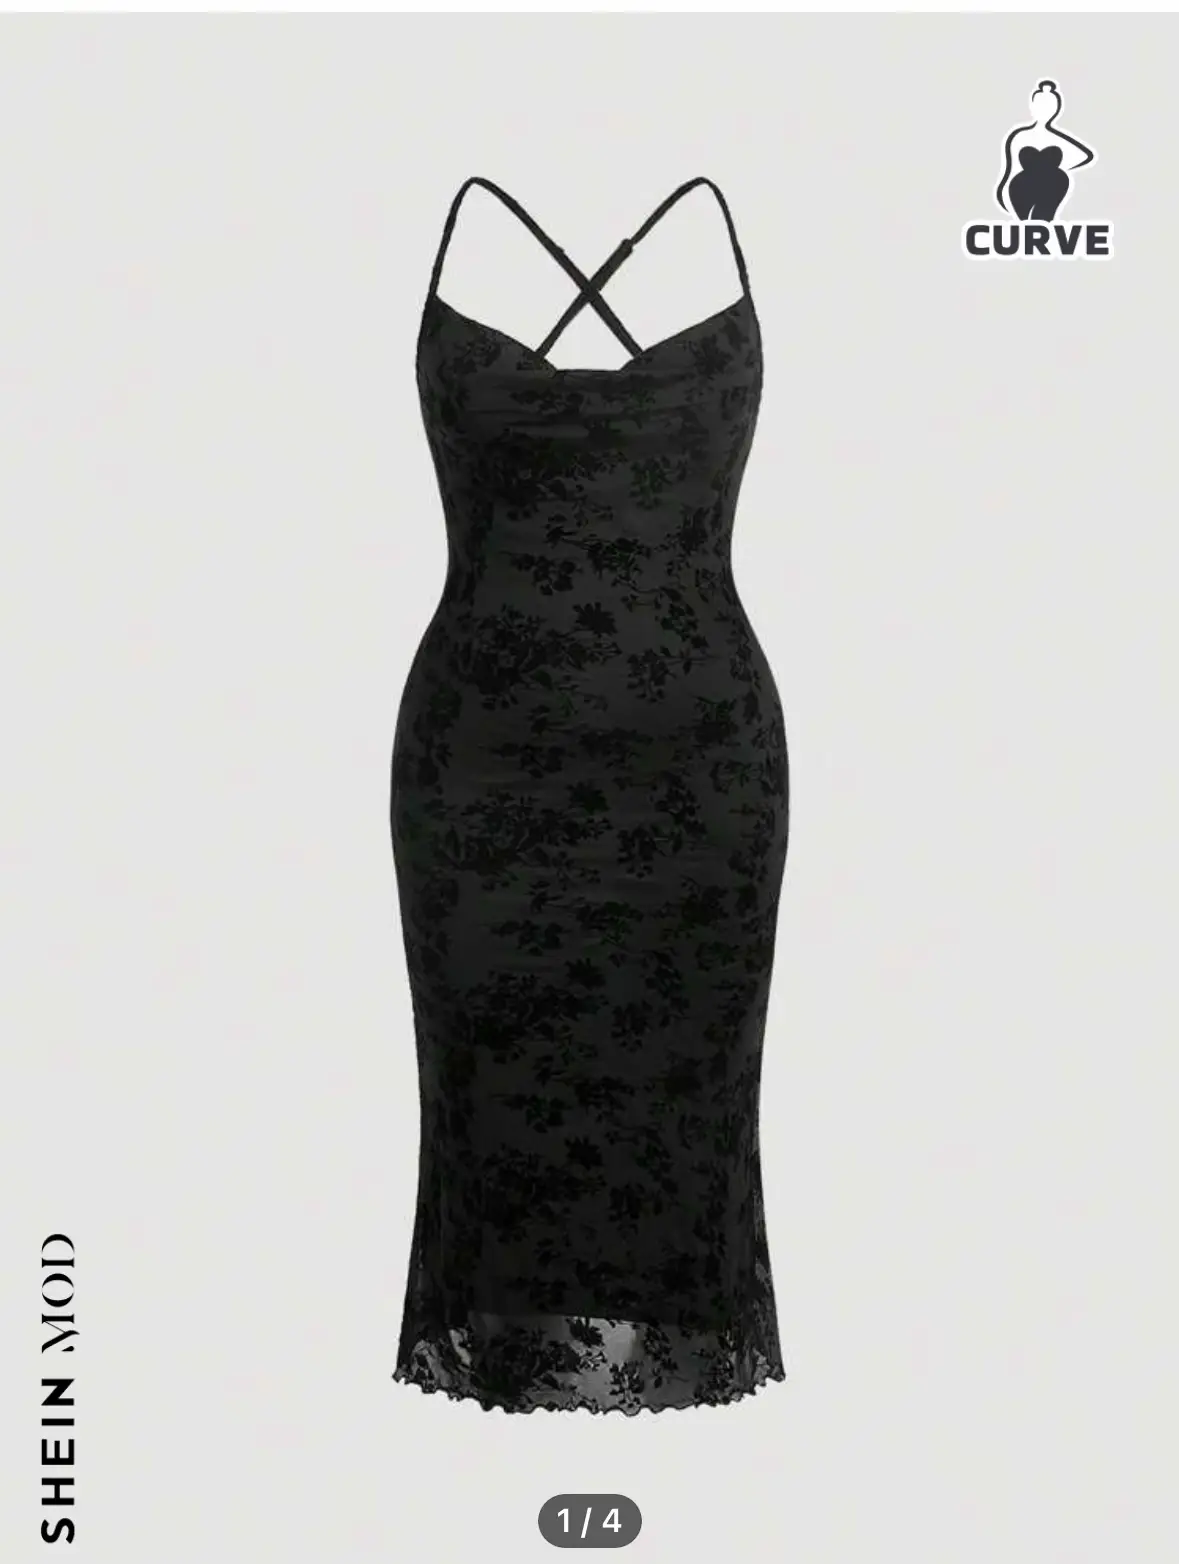 SHEIN Curve Black Rib Bodycon Mock Neck Dress Women's Size 1XL New